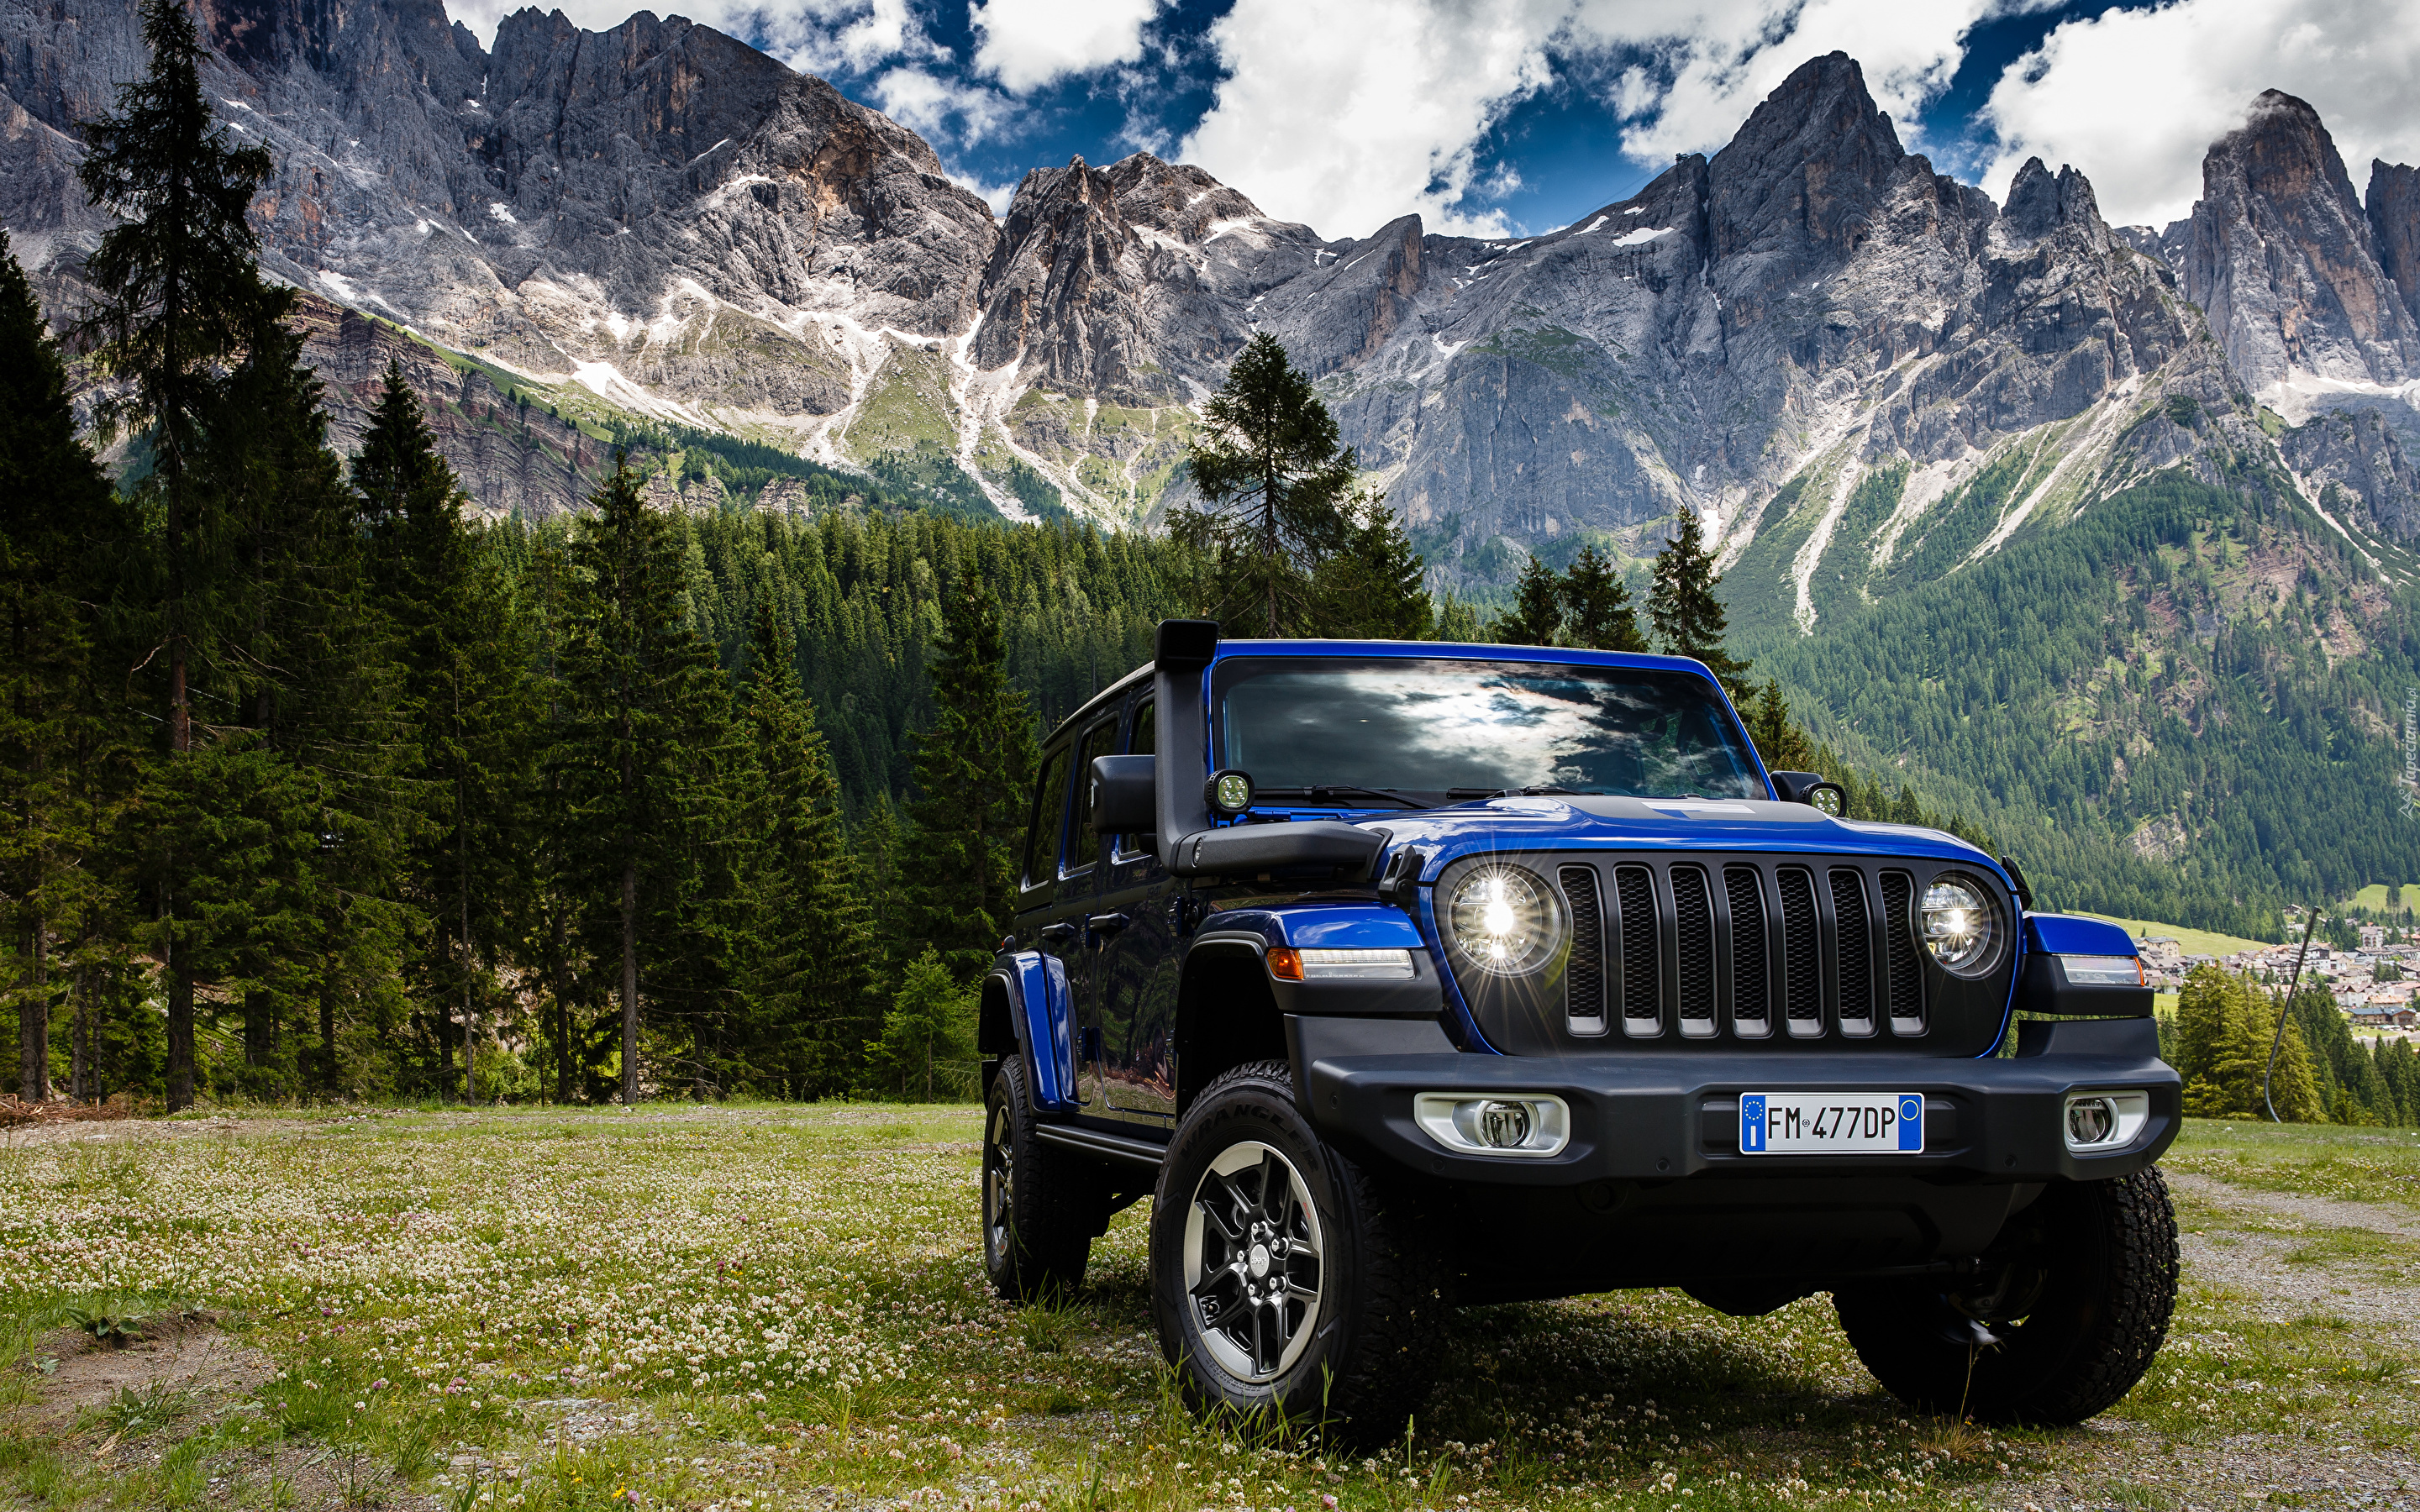 Niebieski, Jeep Wrangler Unlimited Sahara